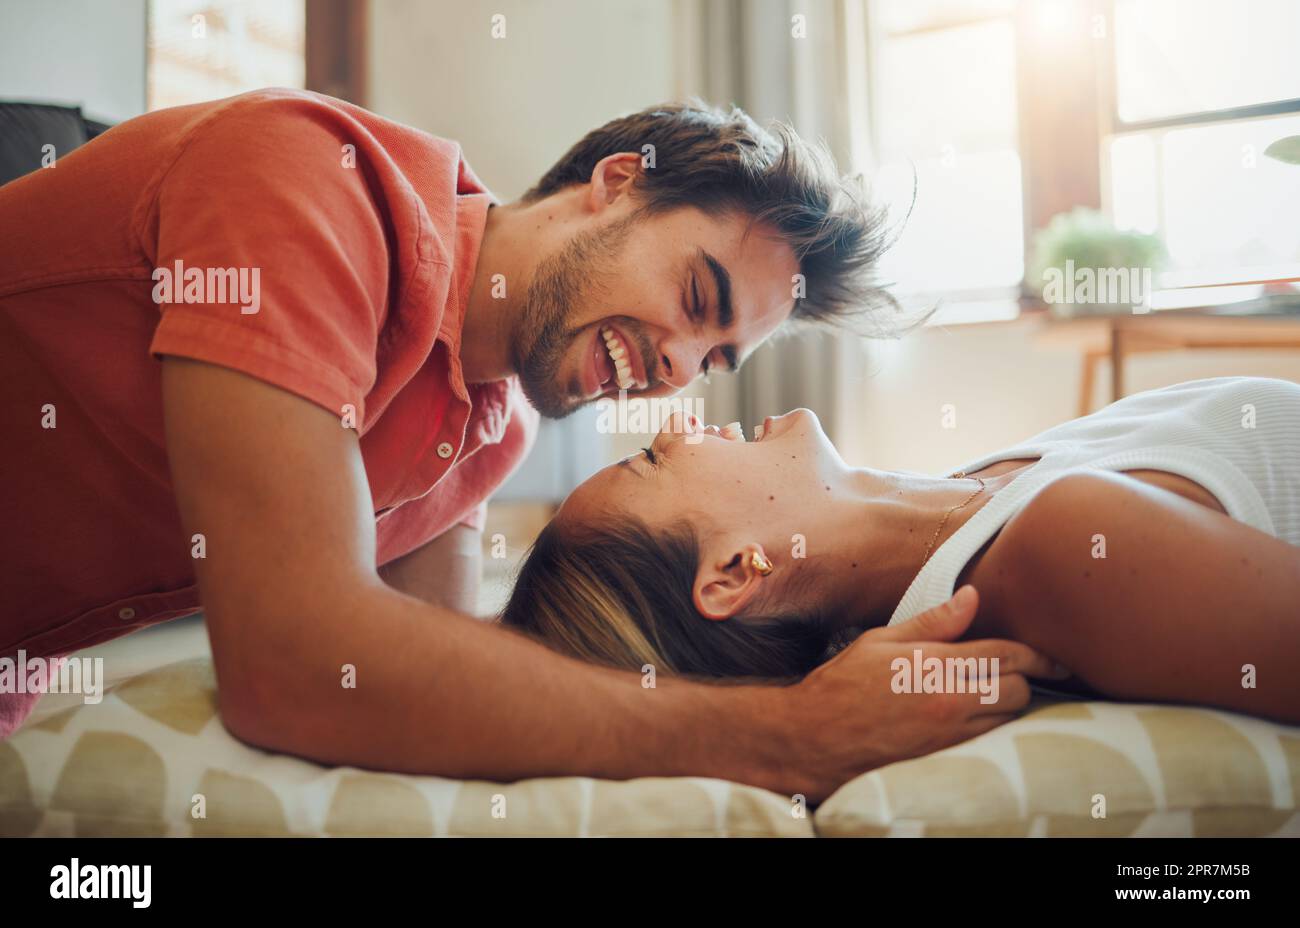 Bonne jeune femme couché tandis que son petit ami penche sur elle comme ils rient ensemble et regardent dans les autres yeux. Couple affectueux qui profite d'un moment romantique et intime chez soi Banque D'Images